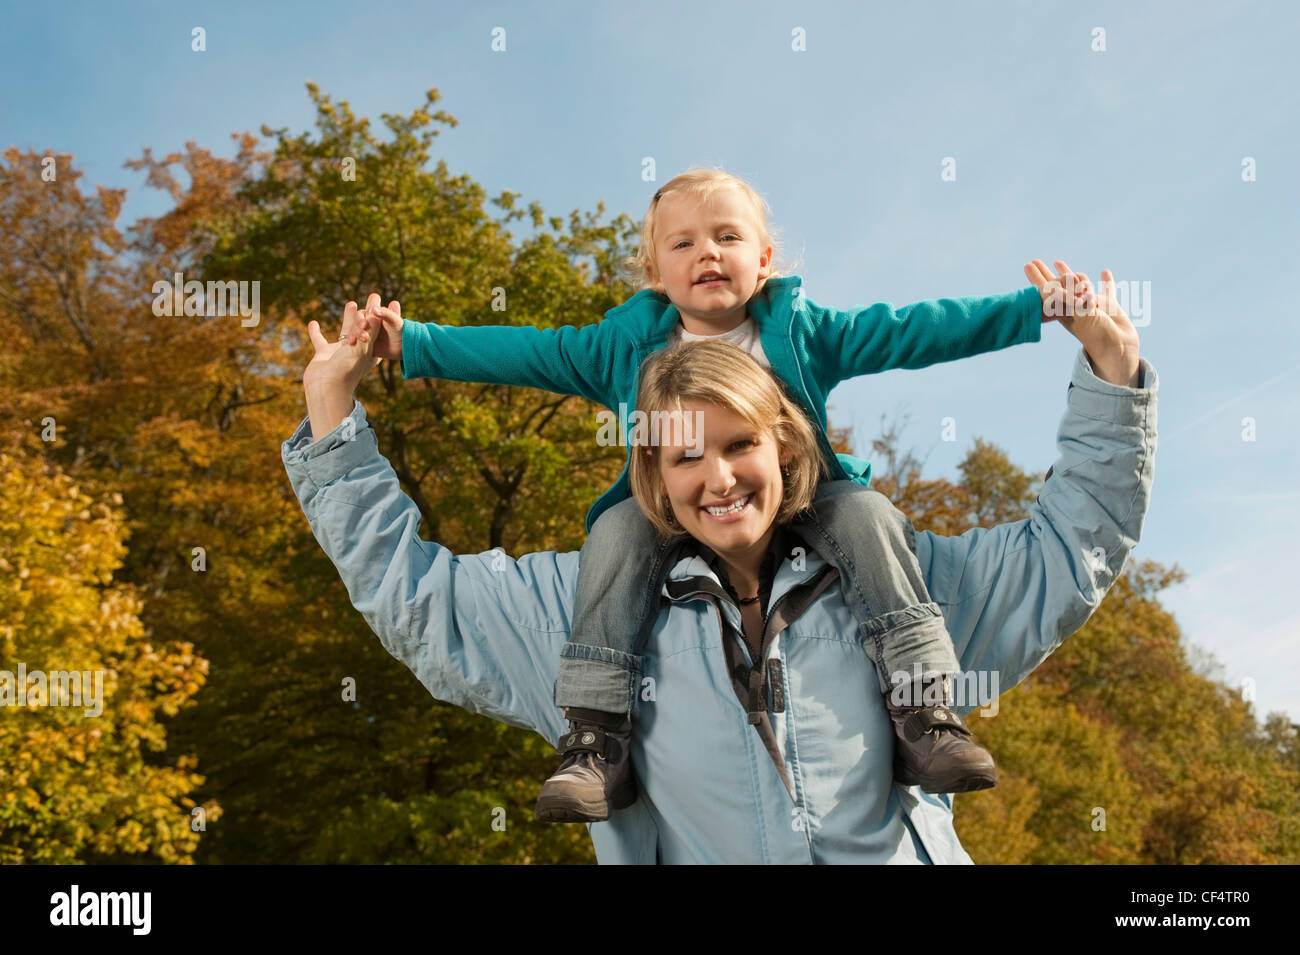 Deutschland, Bayern, Mutter mit Tochter auf Schulter, Lächeln Stockfoto